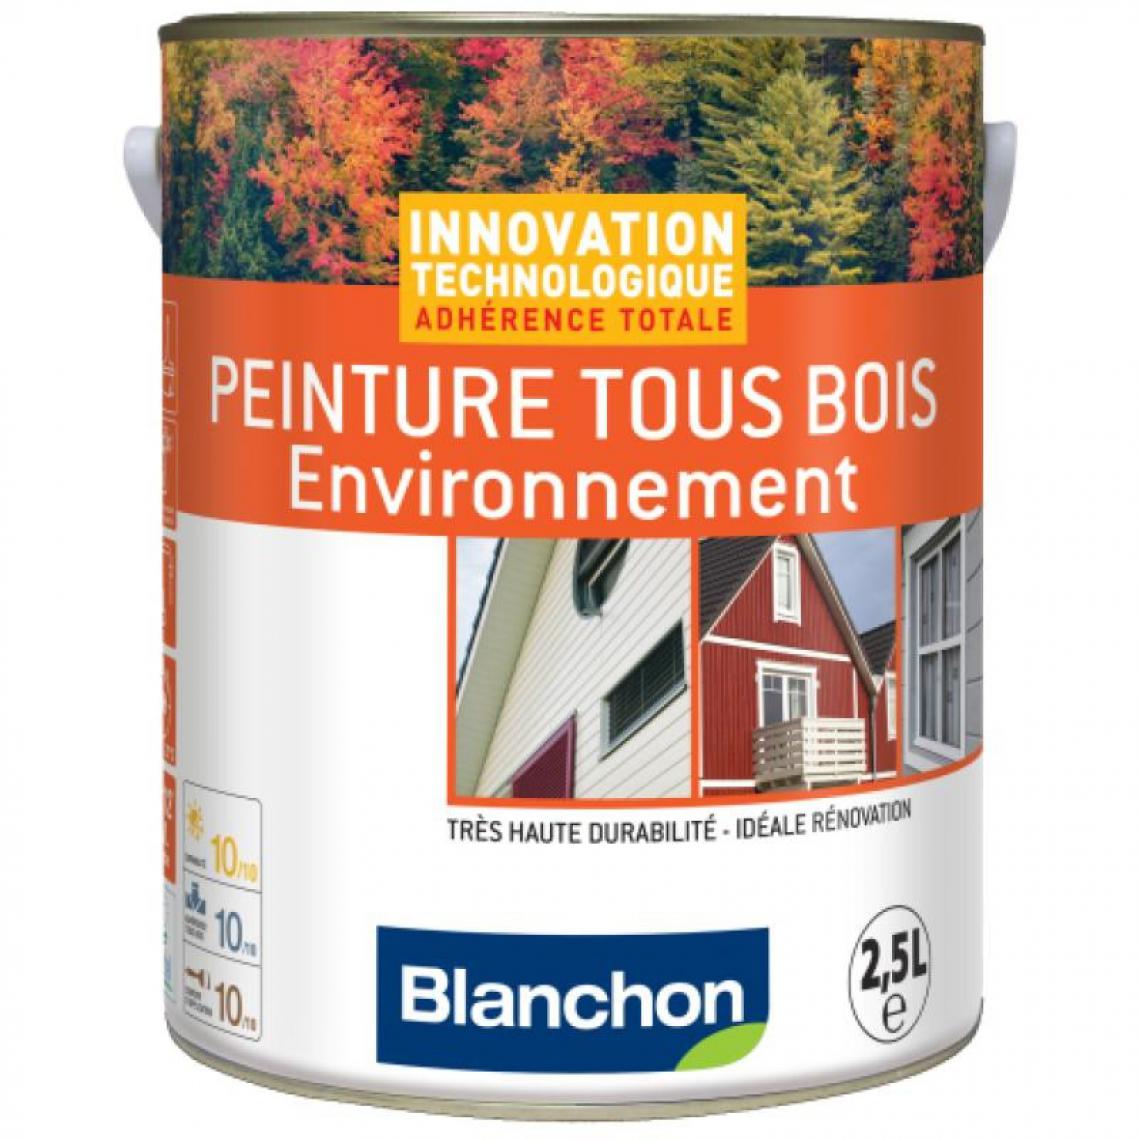 Blanchon - Peinture microporeuse hydrofuge Tous Bois Environnement, blanc 9016, bidon - Produit de finition pour bois